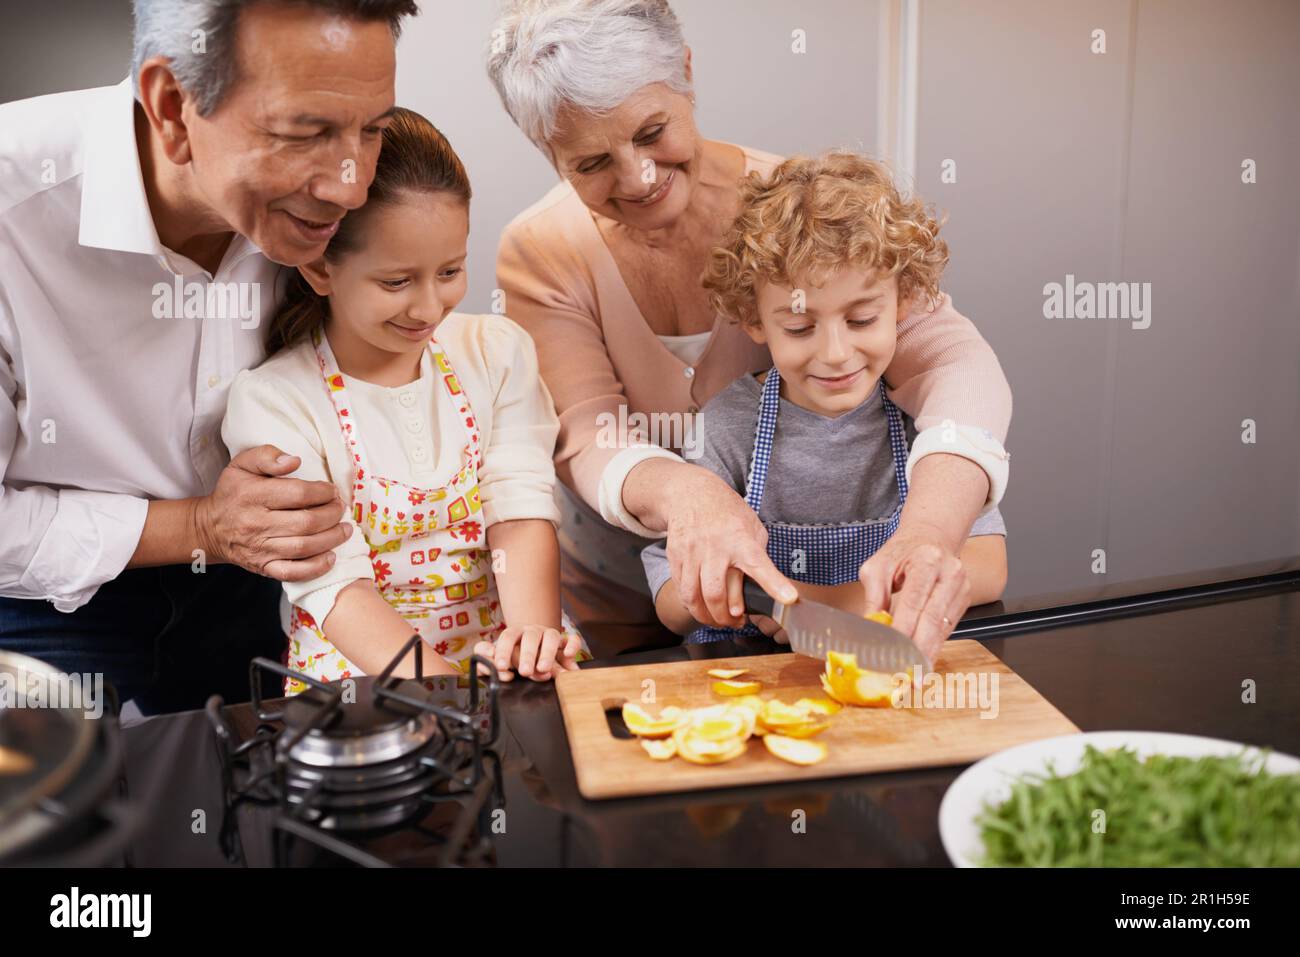 Essen, glückliche Kinder oder Großeltern, die Kochkünste für ein gesundes Abendessen mit Obst oder Gemüse zu Hause lehren. Kinder lernen, Messer oder Stockfoto